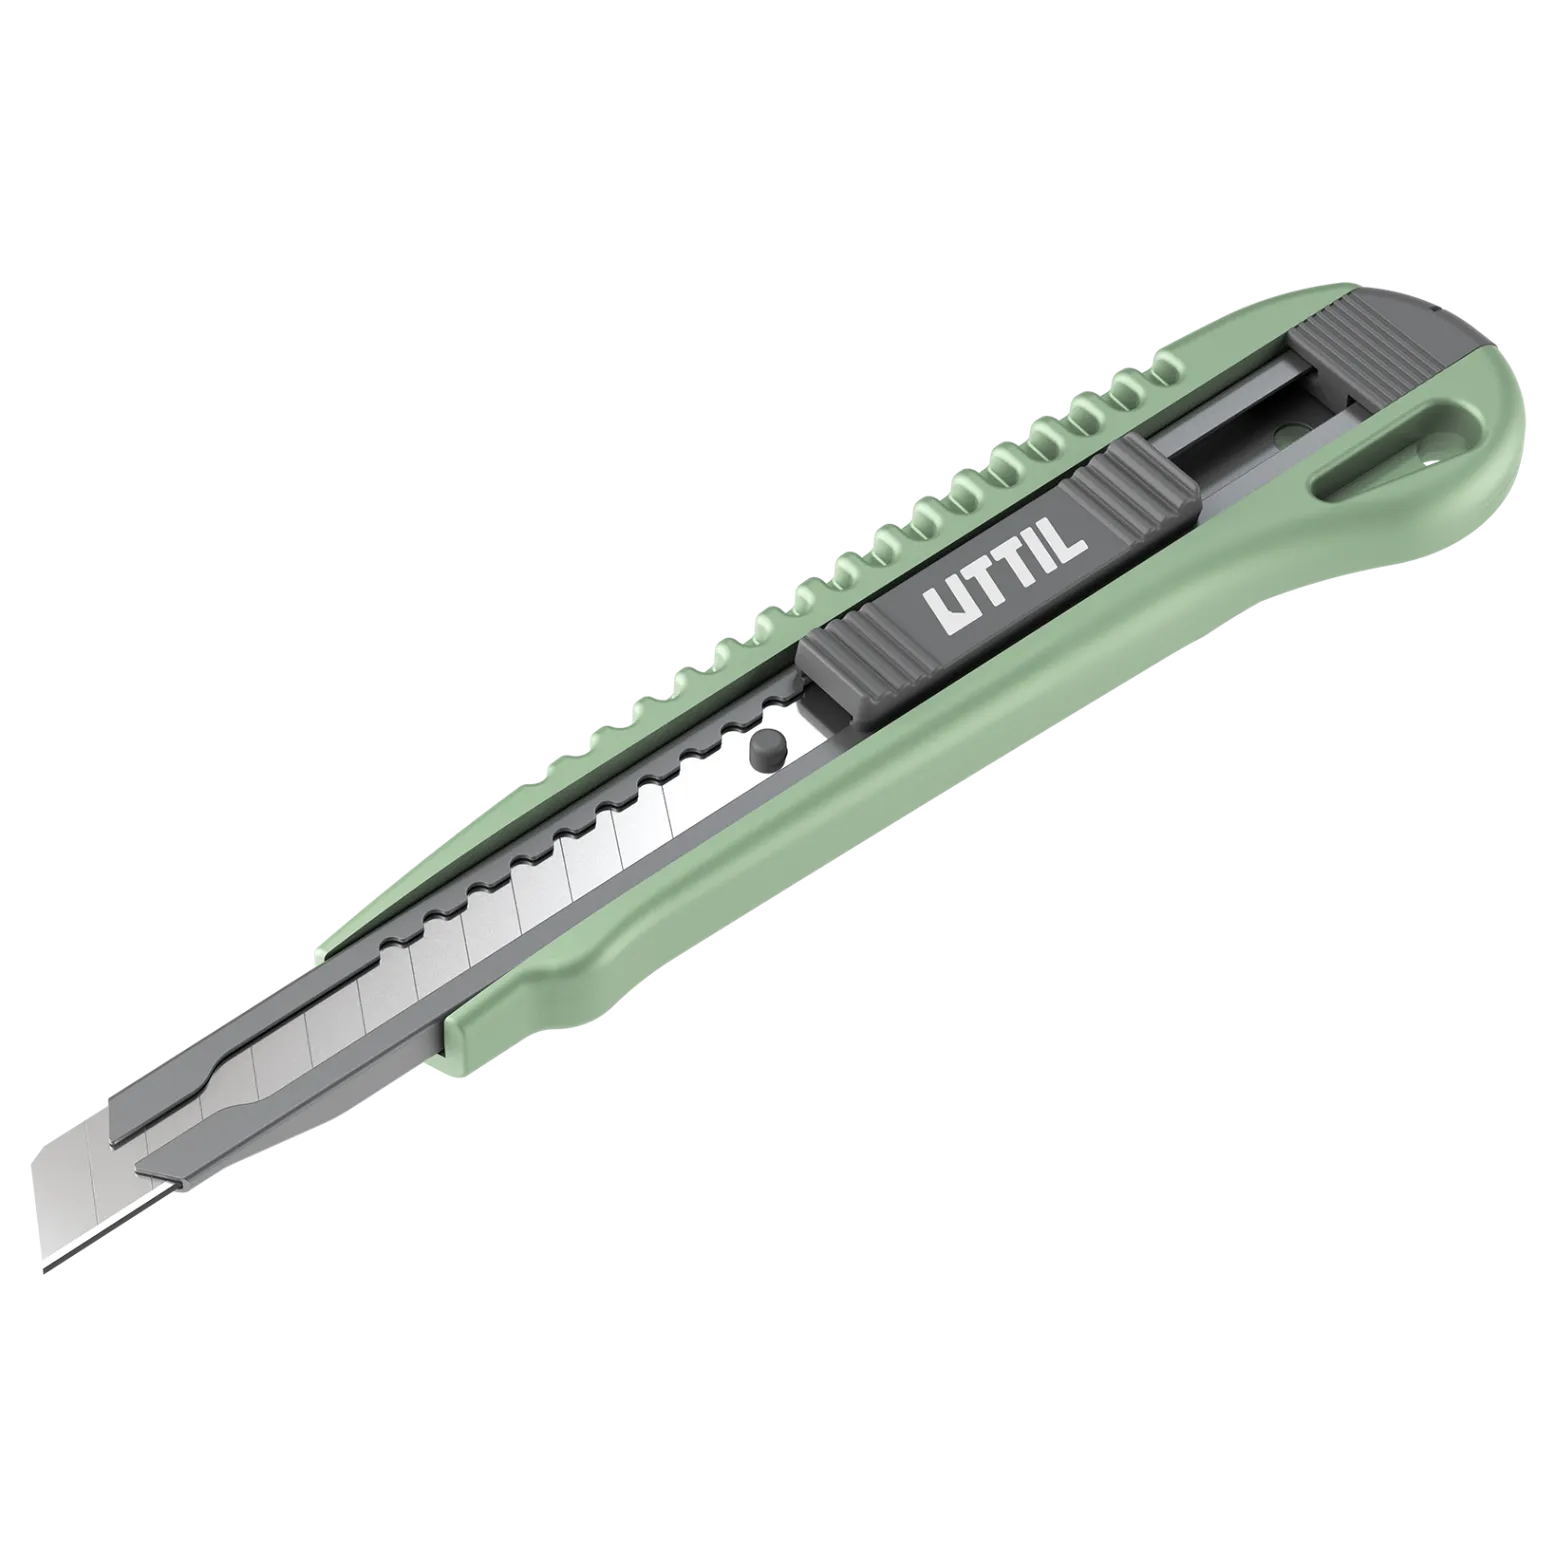 nmuk-07-utility-knife-3